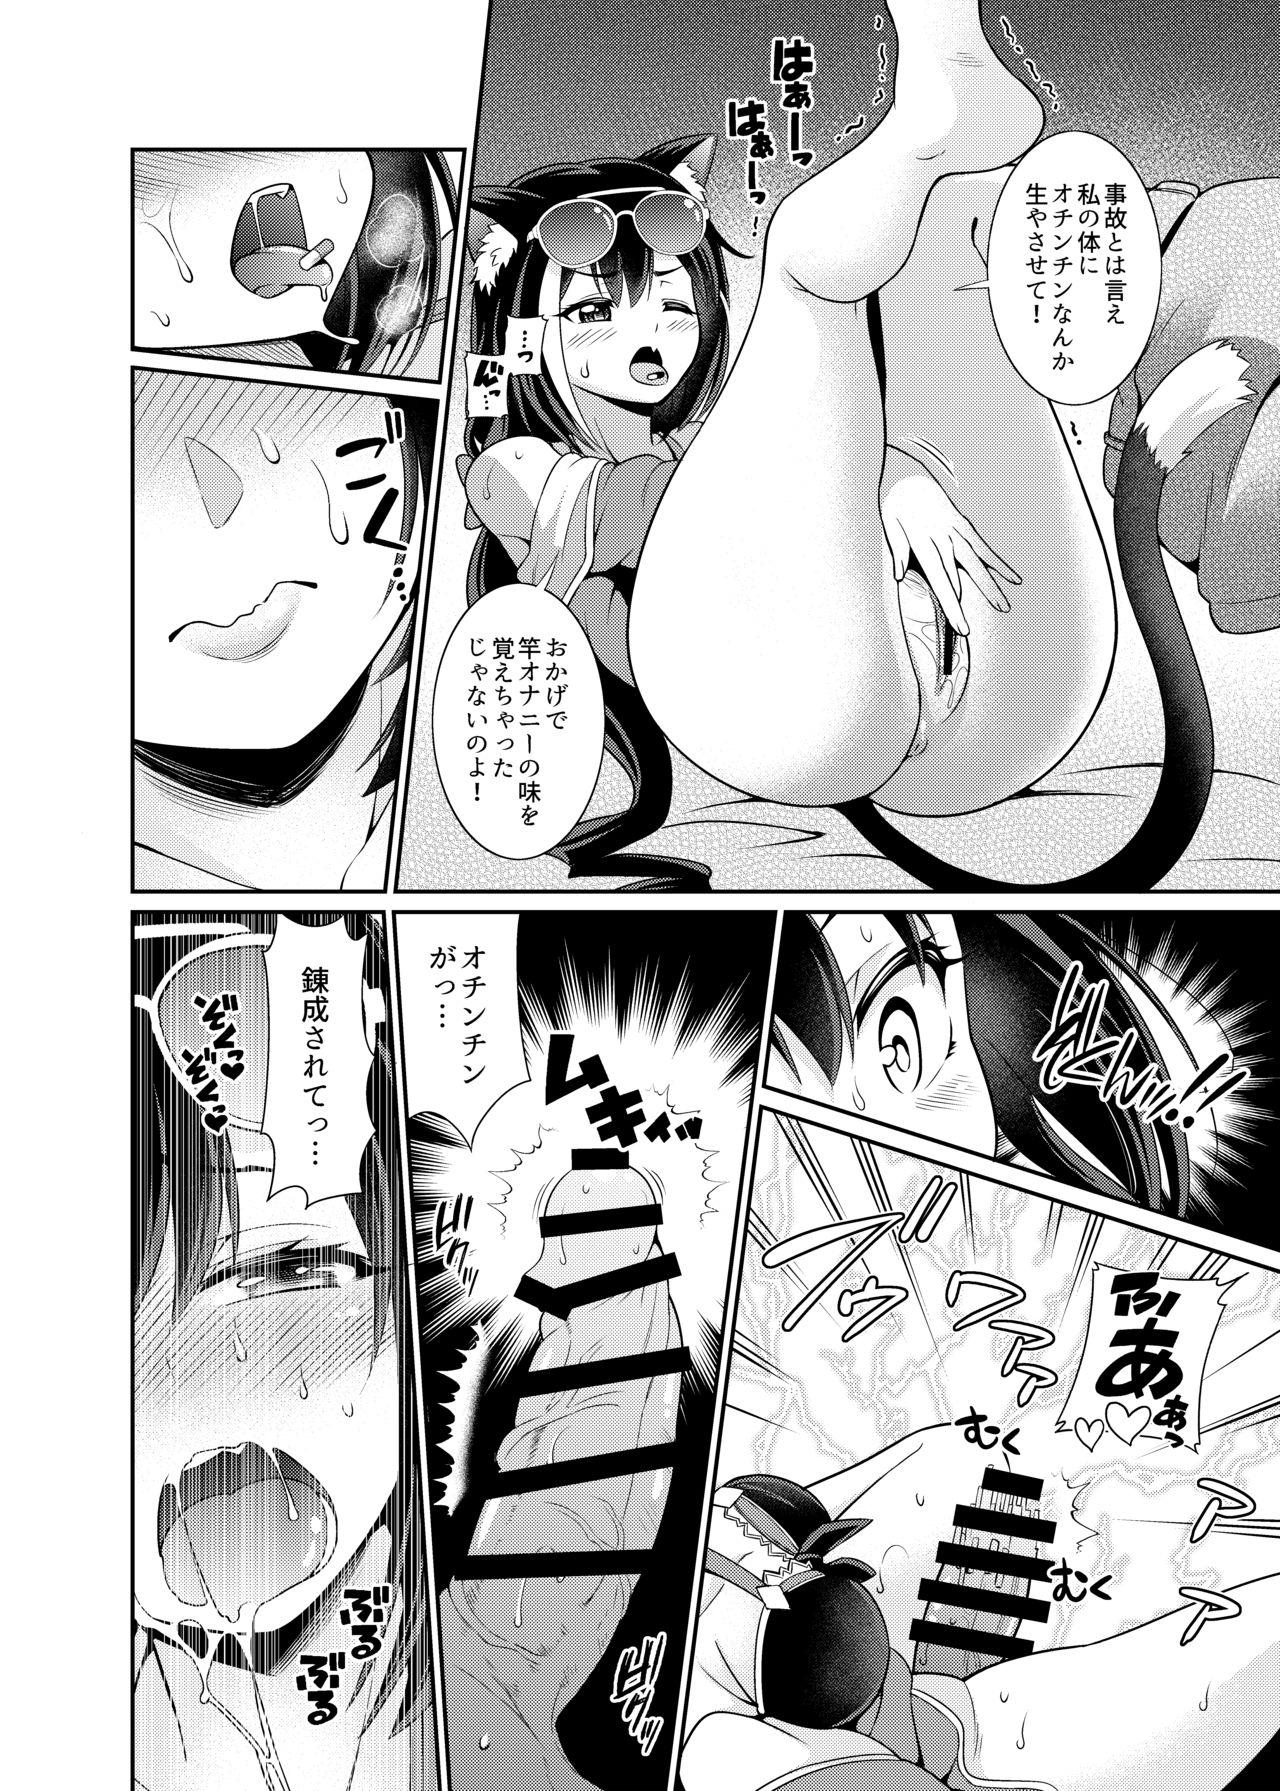 Asshole Umi ni nante Kuru kara…Ochinchin ga Haechau no yo!! - Princess connect Pussy Eating - Page 4